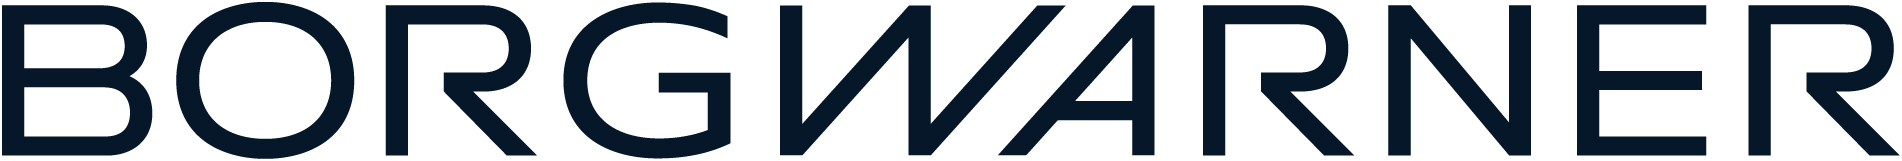 BorgWarner Logo (PRNewsfoto/BorgWarner)